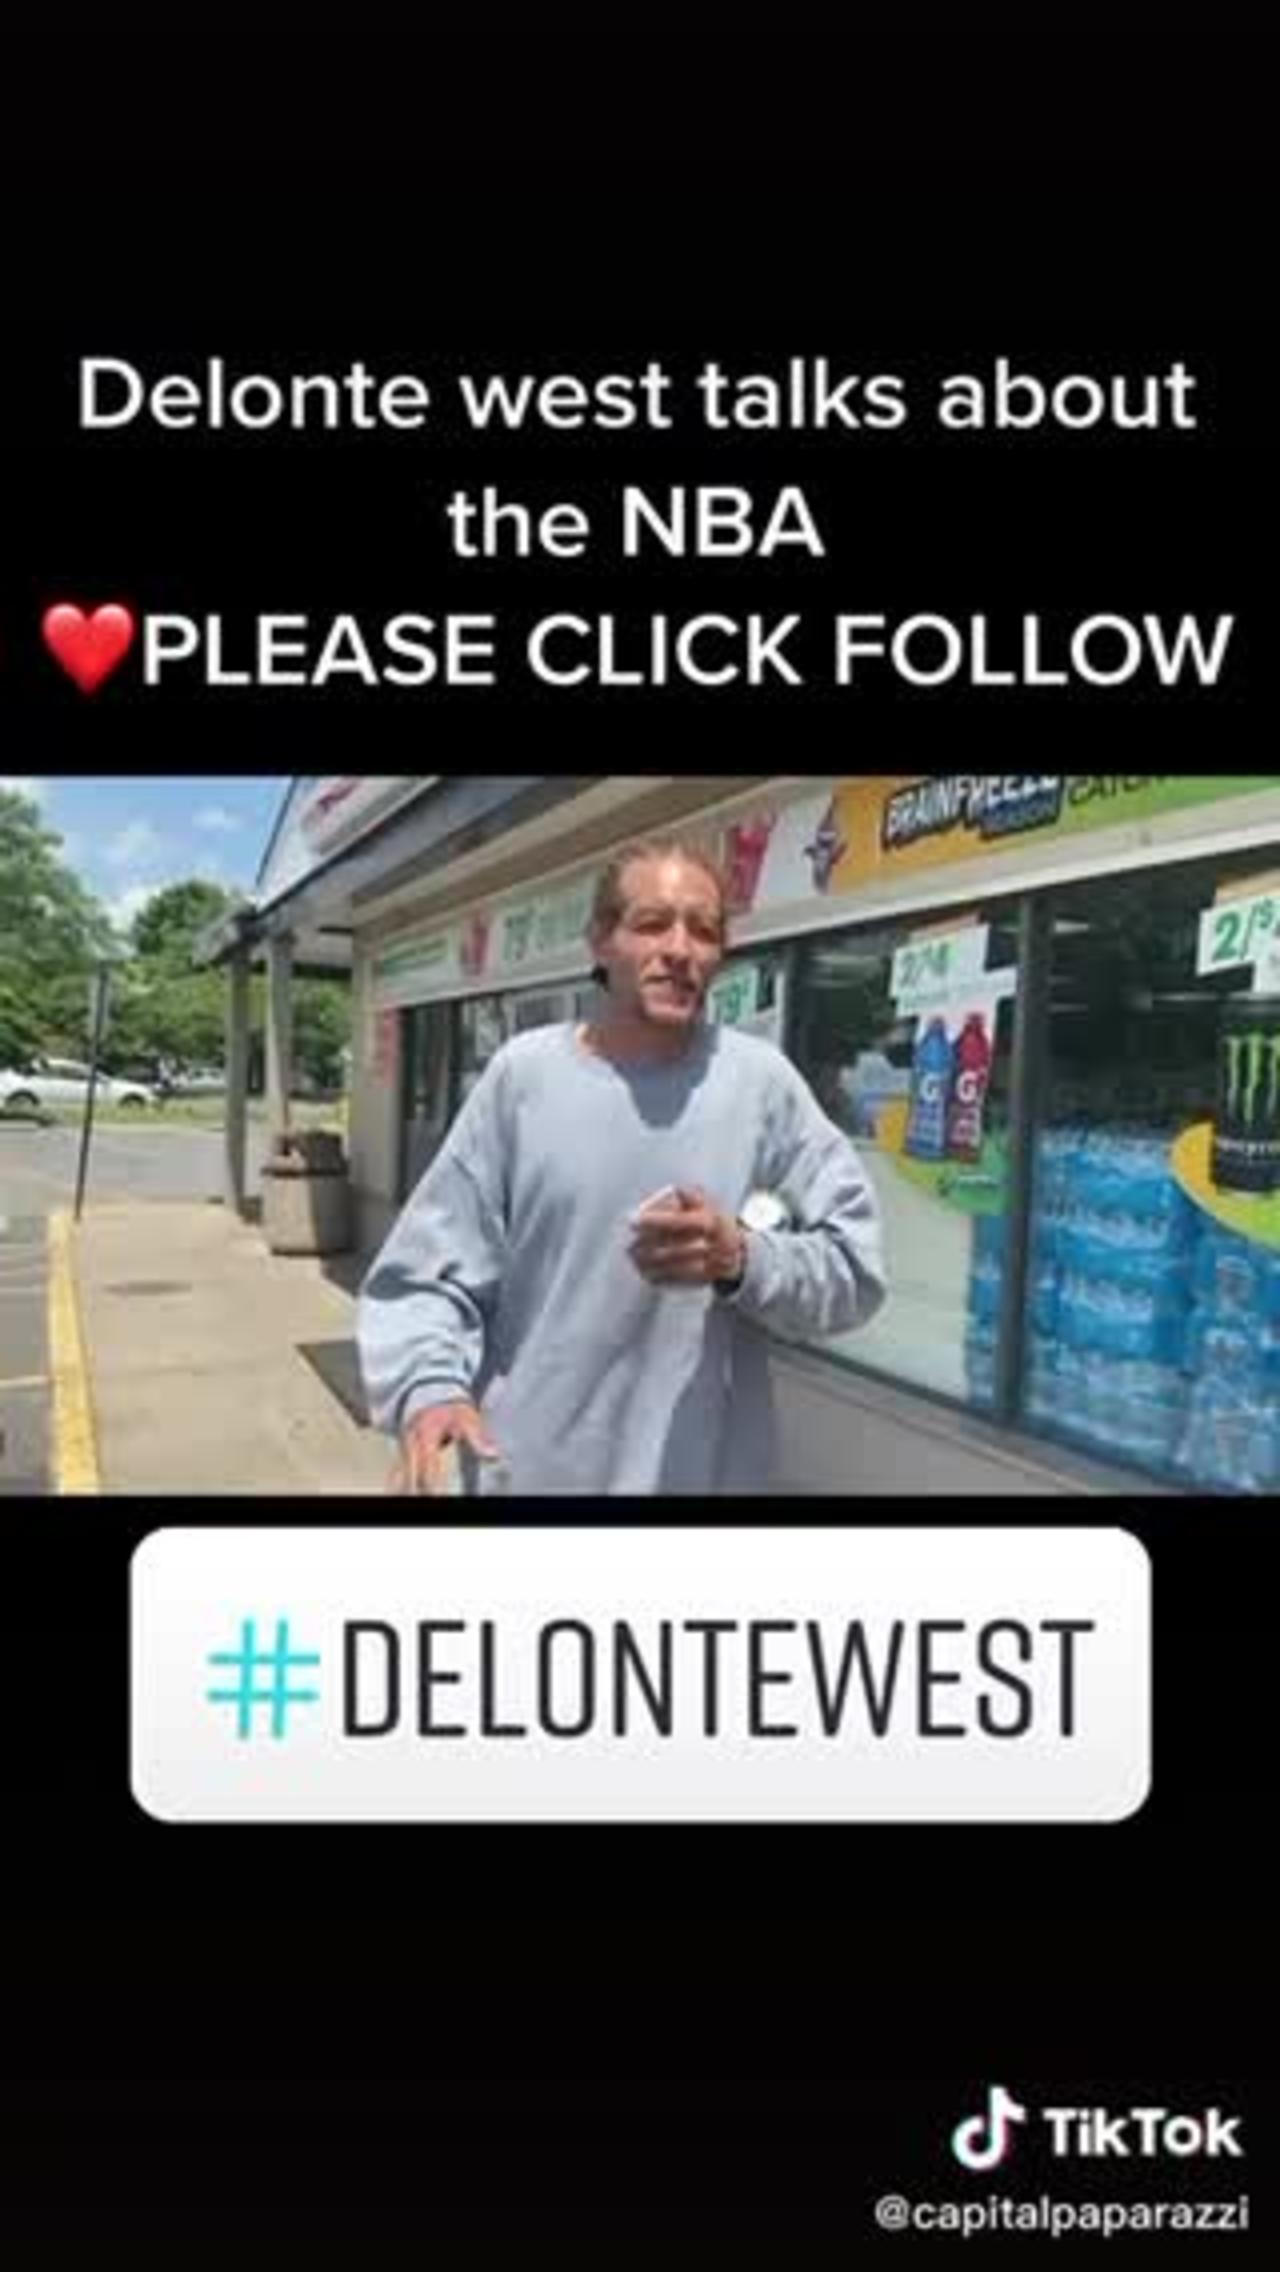 Delonte West in good spirit